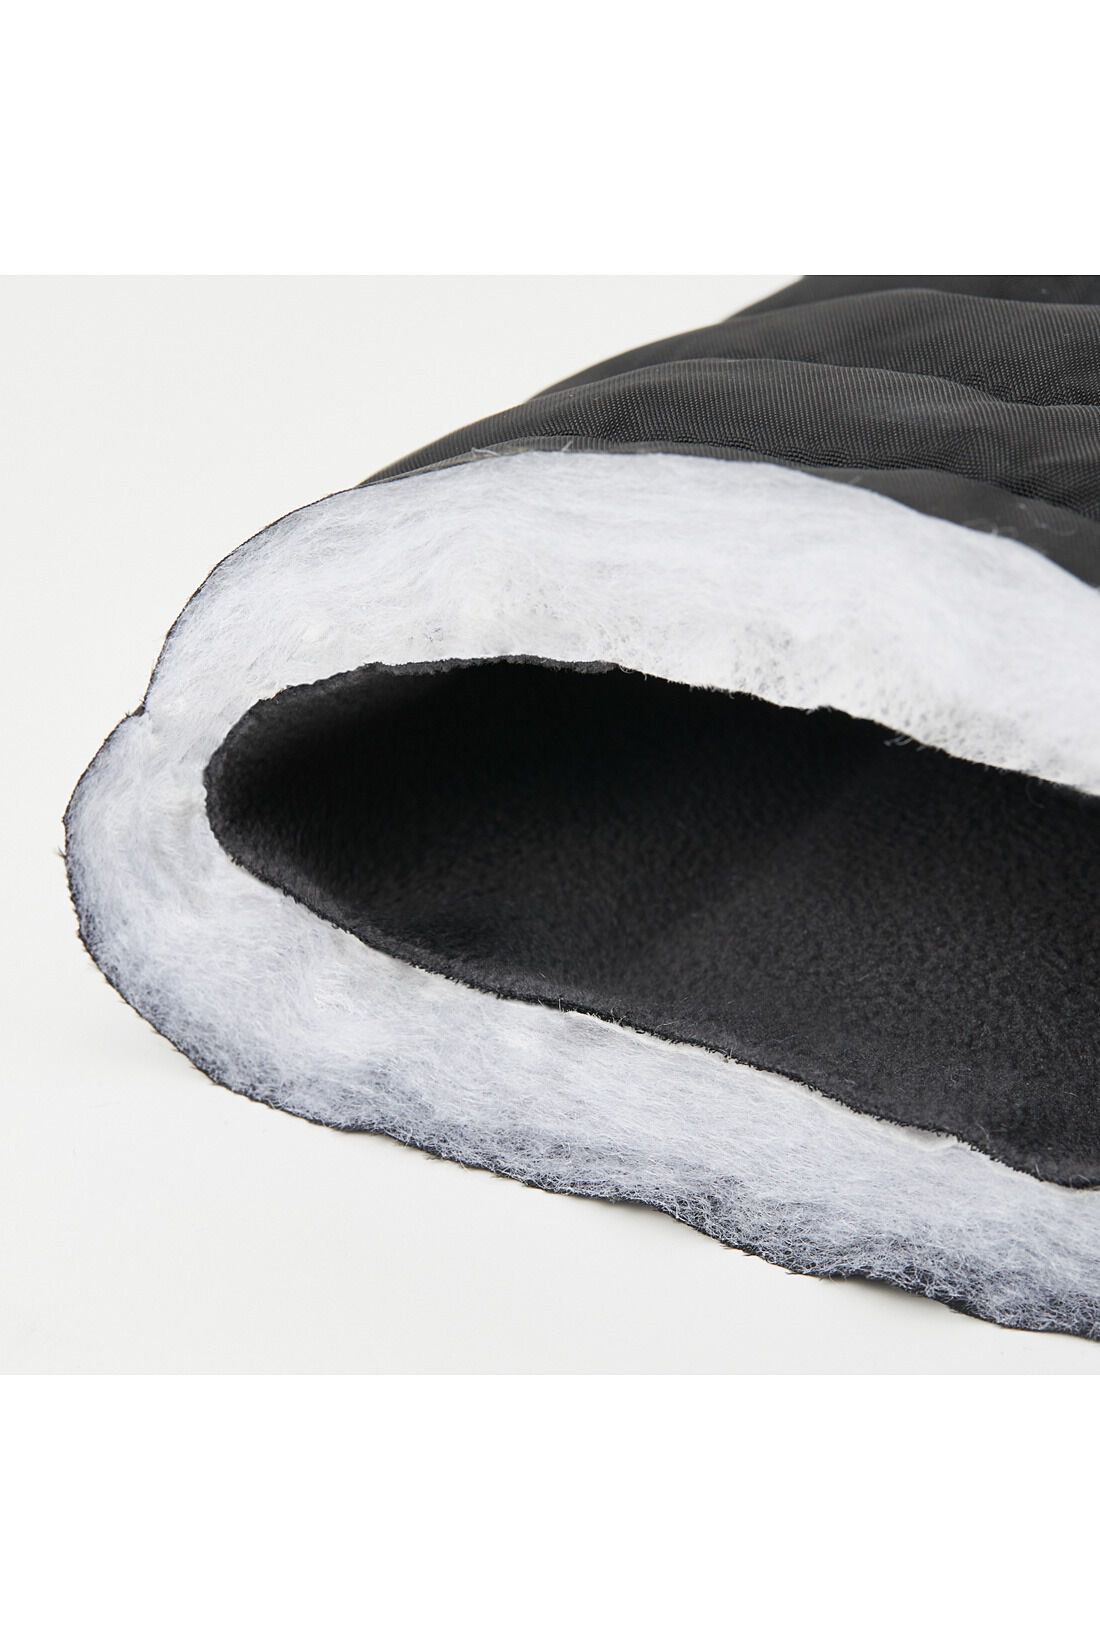 Live in  comfort|リブ イン コンフォート　スタイルアップもかなう！ 裏フリース遣いのほかほか中わた　ロングブーツ〈ブラック〉|汚れてもふき取りやすいナイロン素材に、ふかふかキルティングの中わた入りでしっかり暖か。